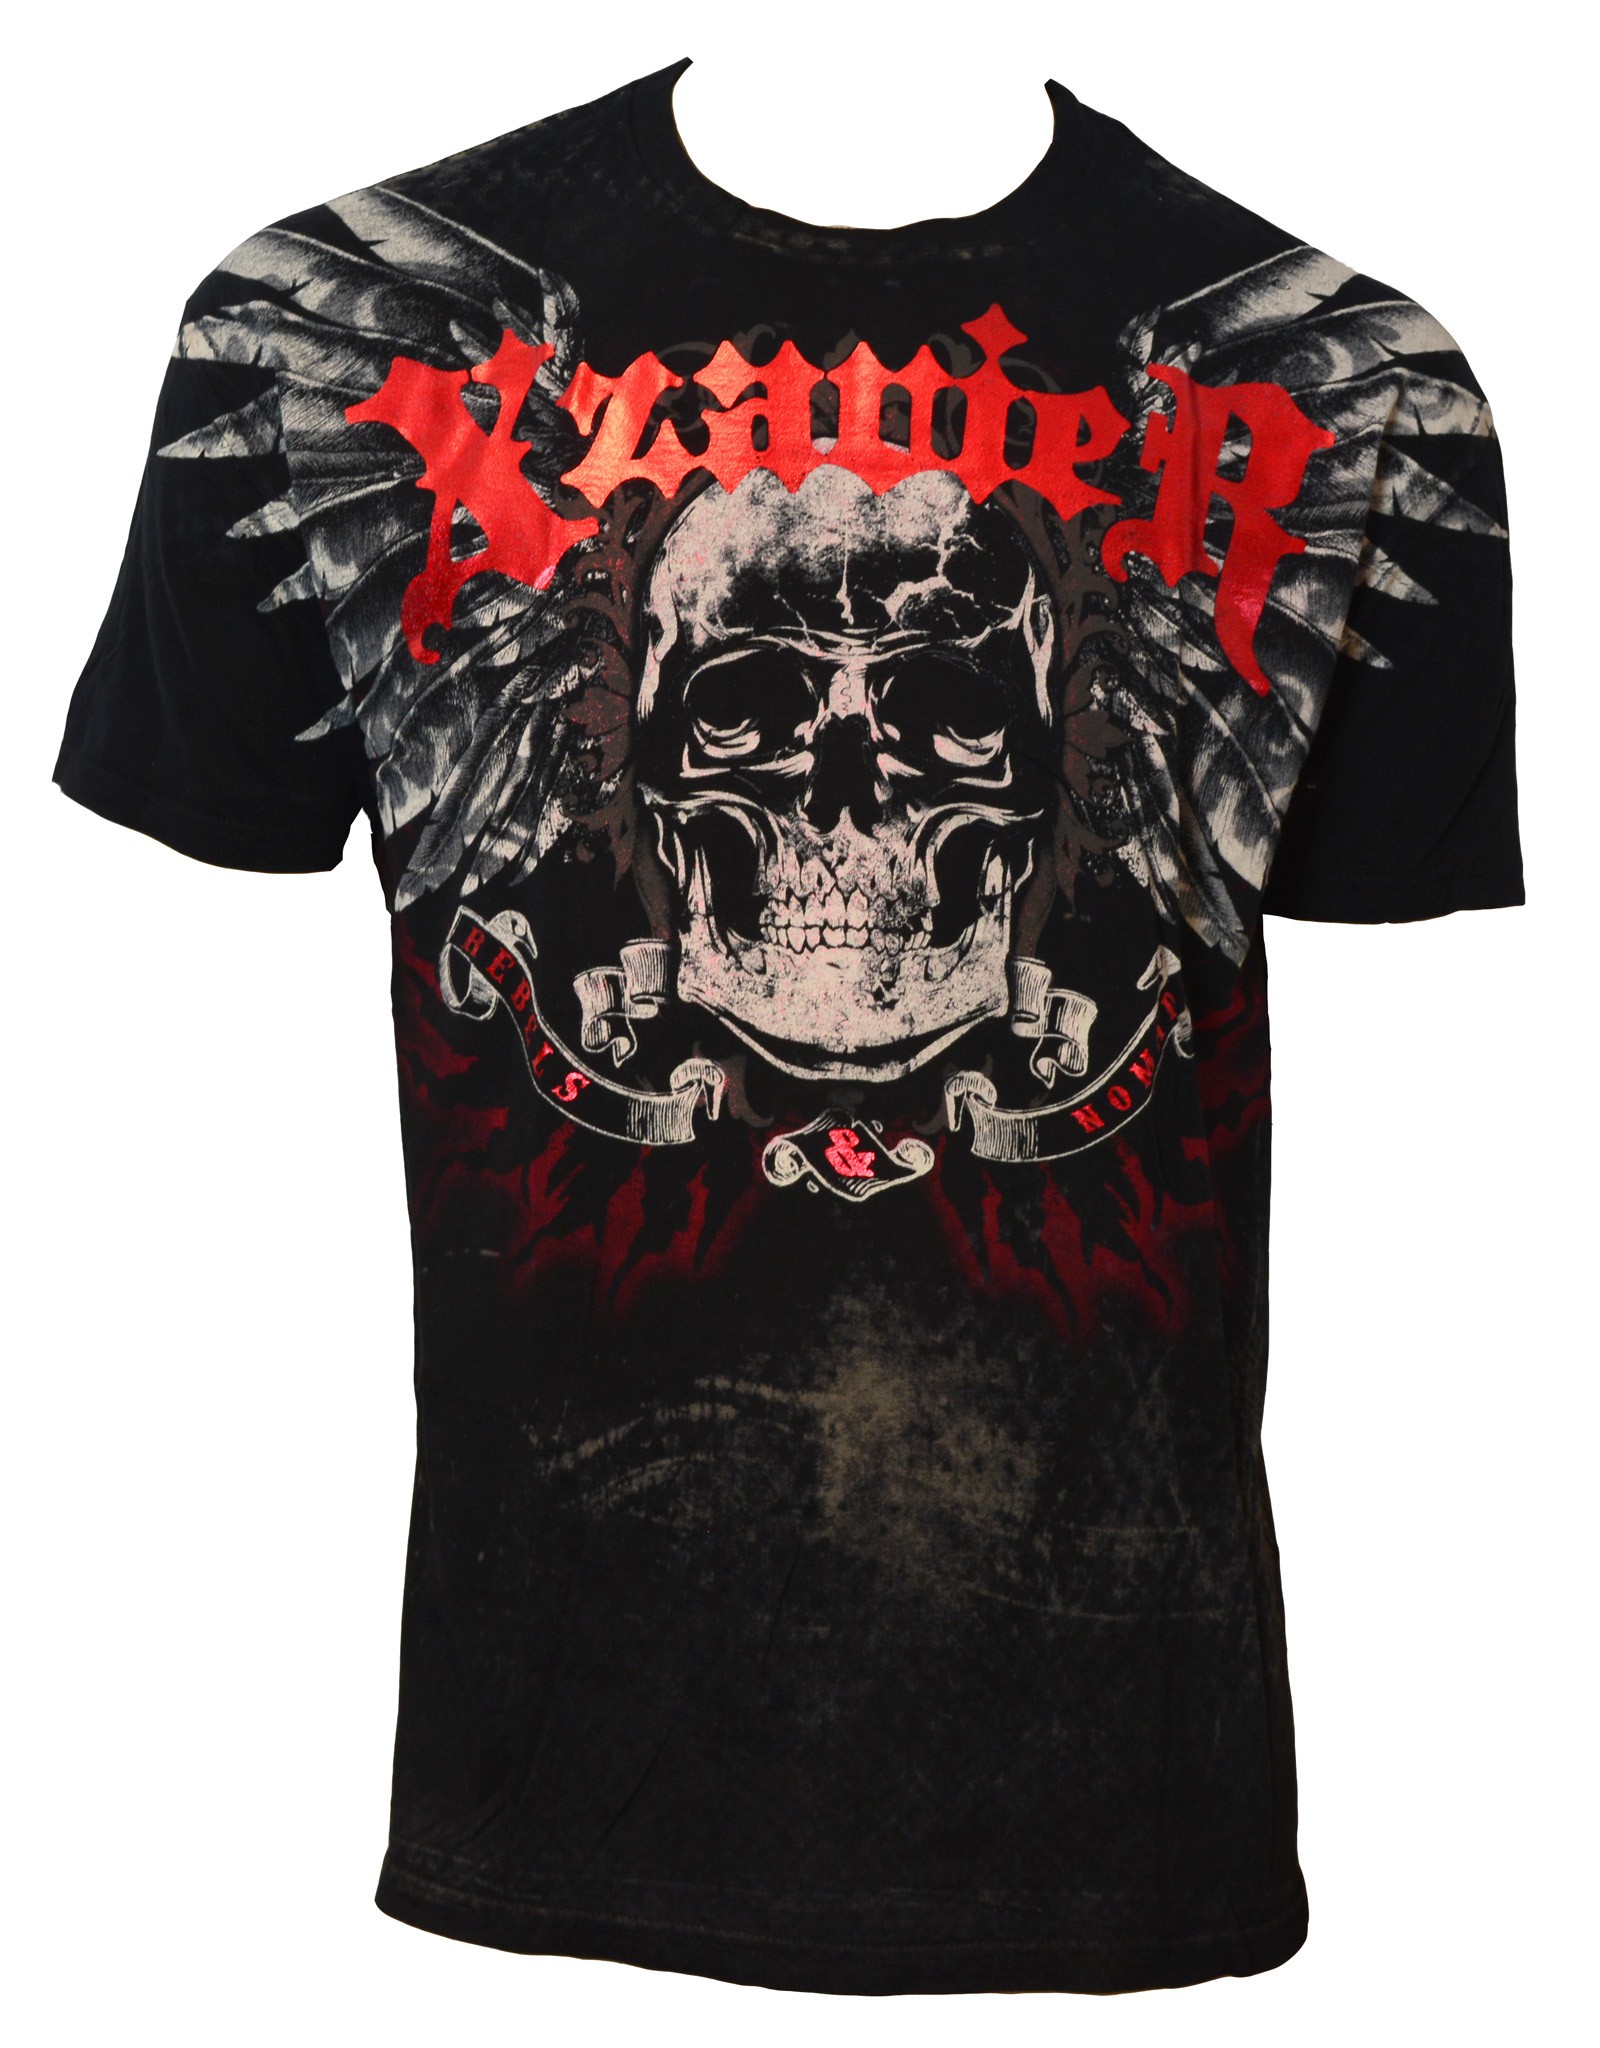 Xzavier - Rebel Skulls T-Shirt